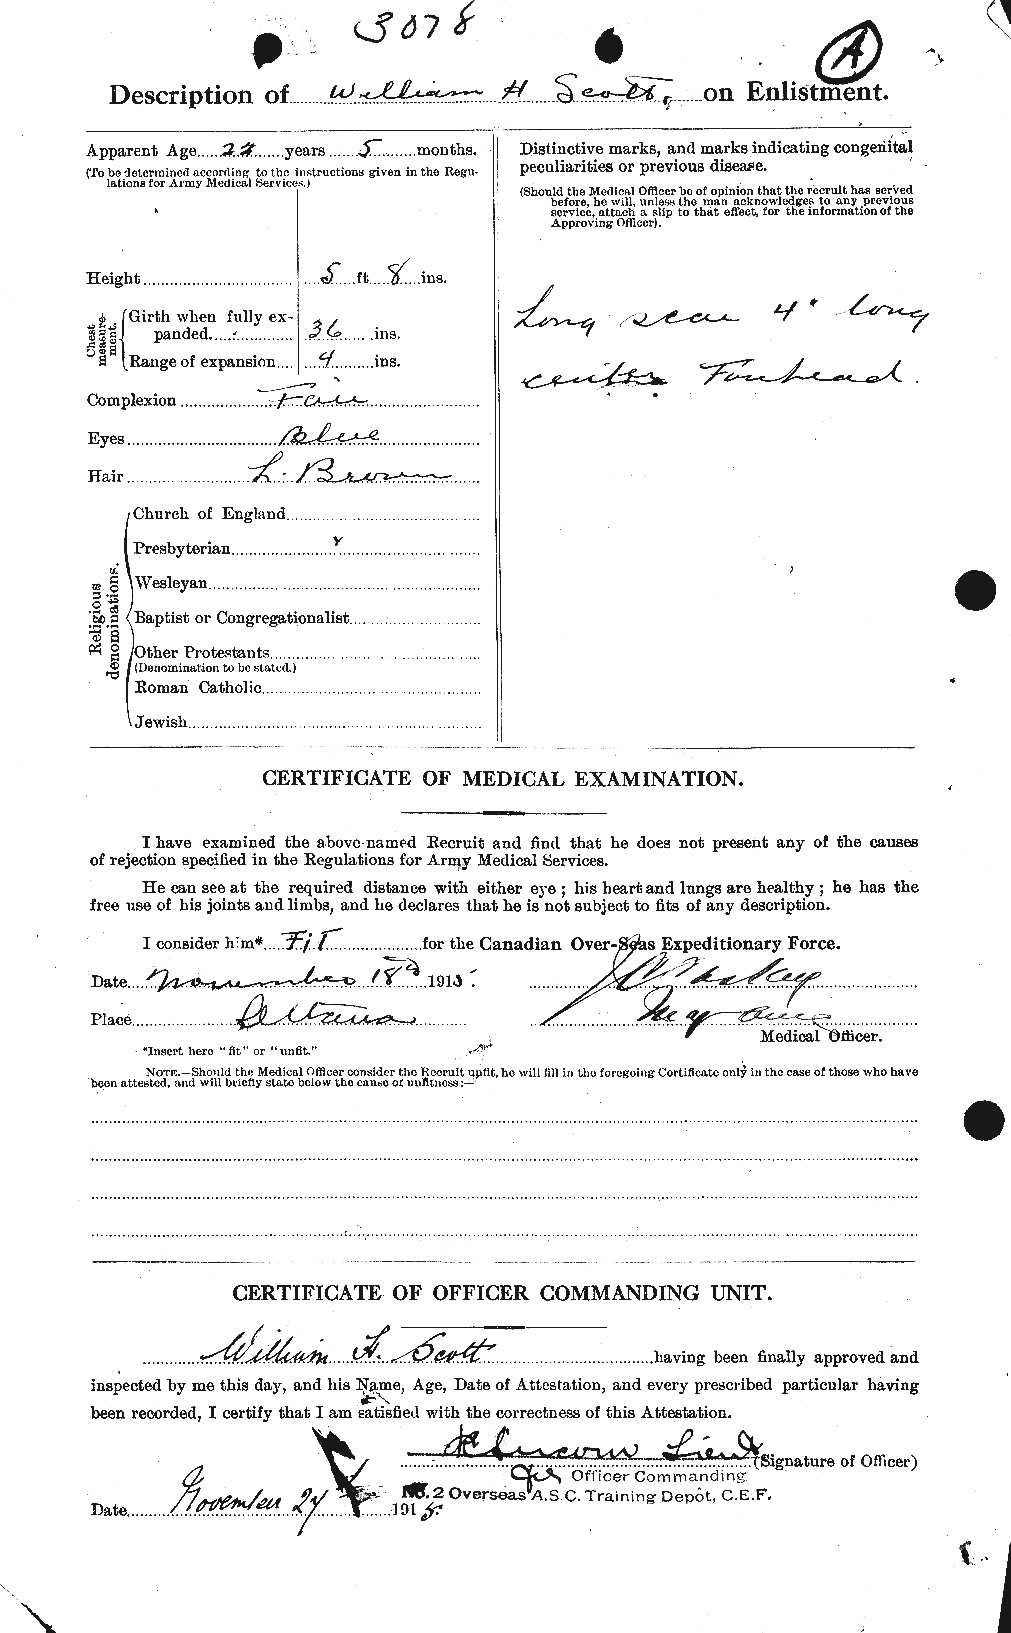 Dossiers du Personnel de la Première Guerre mondiale - CEC 086999b